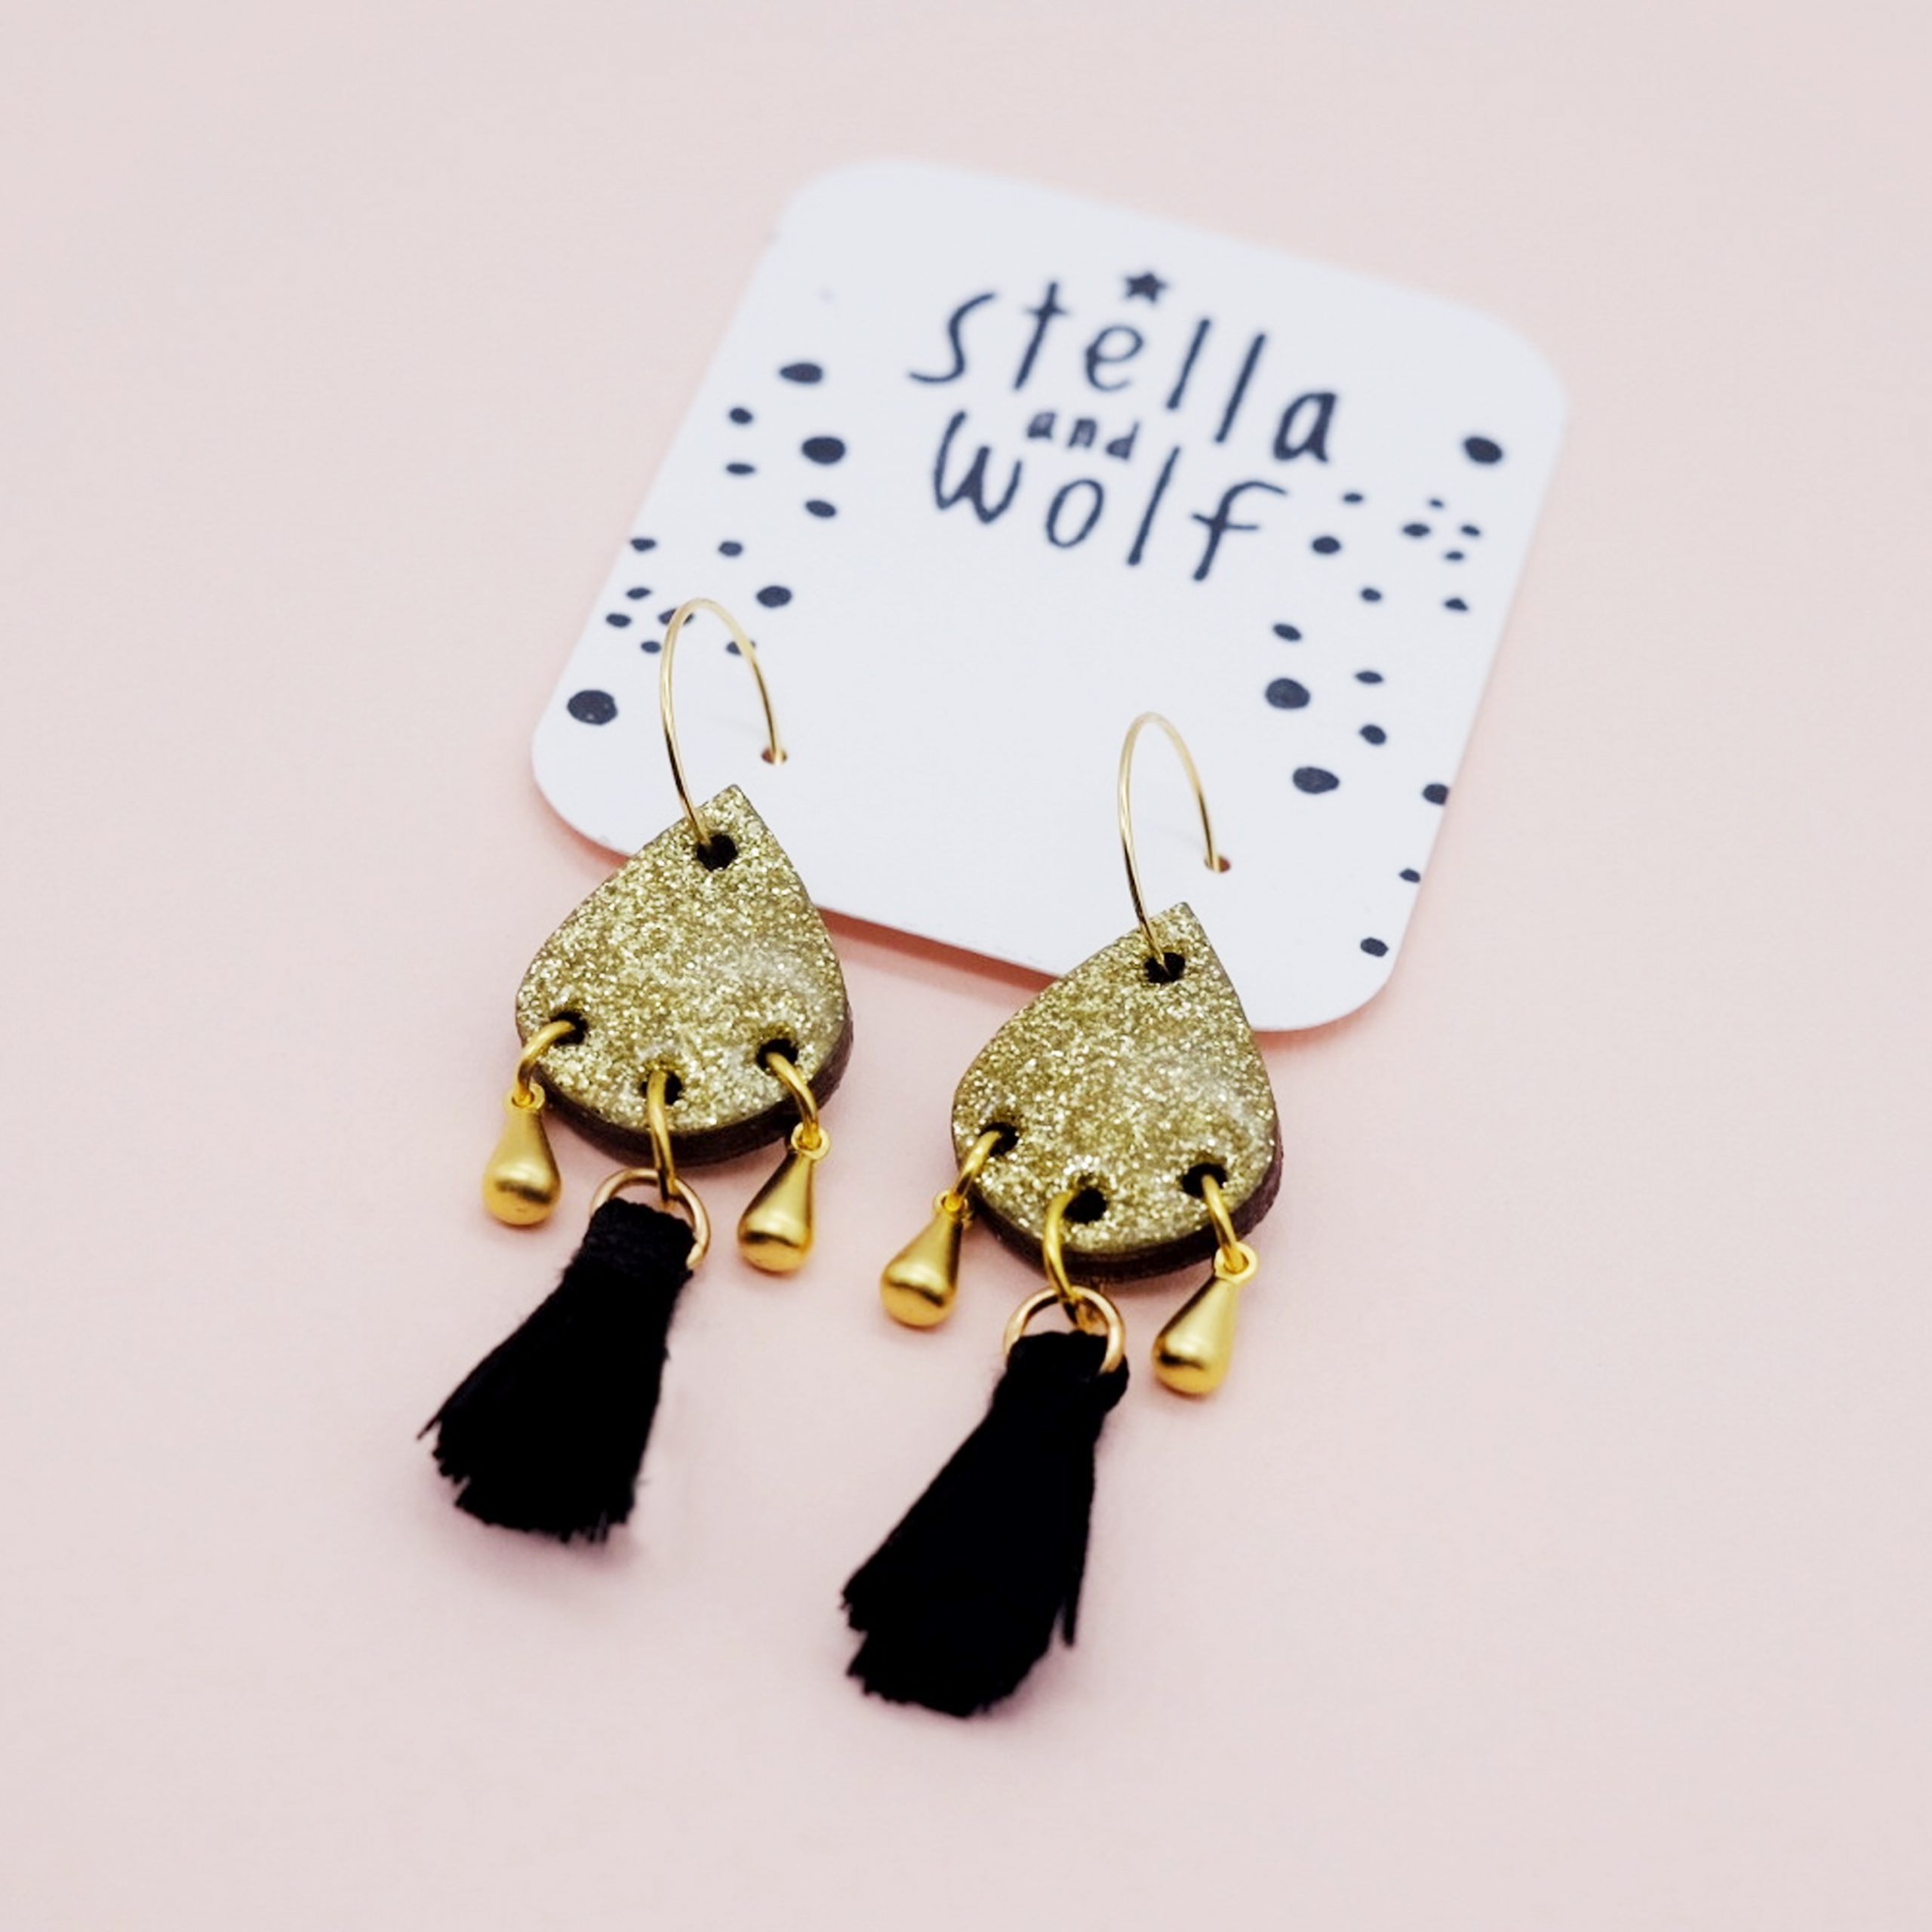 Stella & Wolf Gold Glitter Tassel Statement Earrings